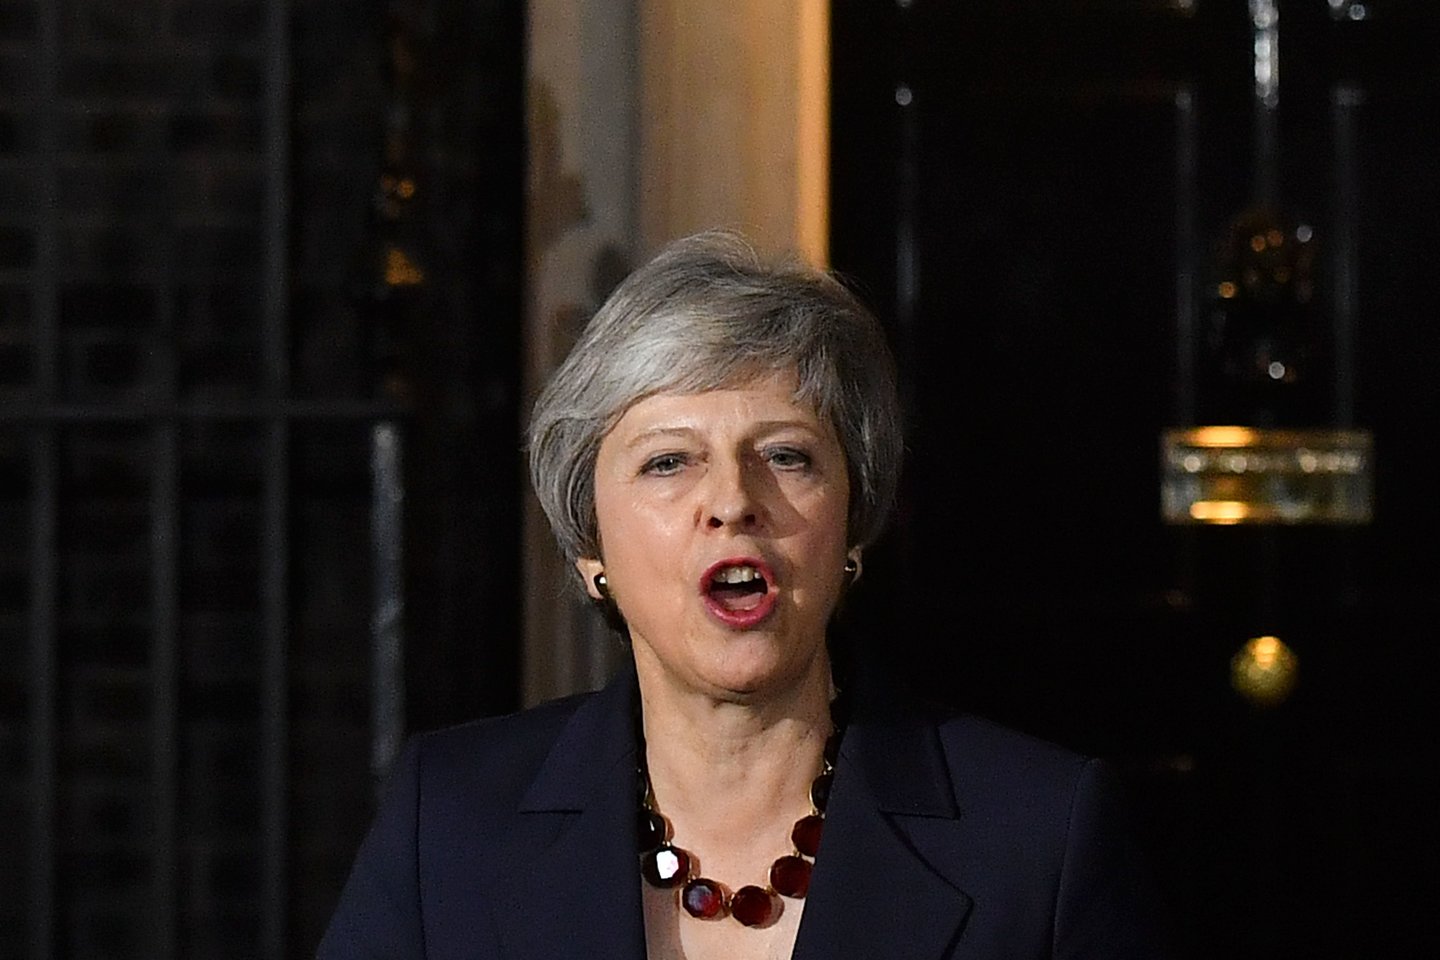 Jungtinės Karalystės ministrė pirmininkė Theresa May penktadienį tiesiogiai kreipėsi į rinkėjus prašydama paremti jos „Brexit“ planą ir laukia, ar oponentai jos pačios partijoje sutelks pakankamą paramą, kad galėtų mesti iššūkį jos vadovavimui. <br>AFP/Scanpix nuotr.